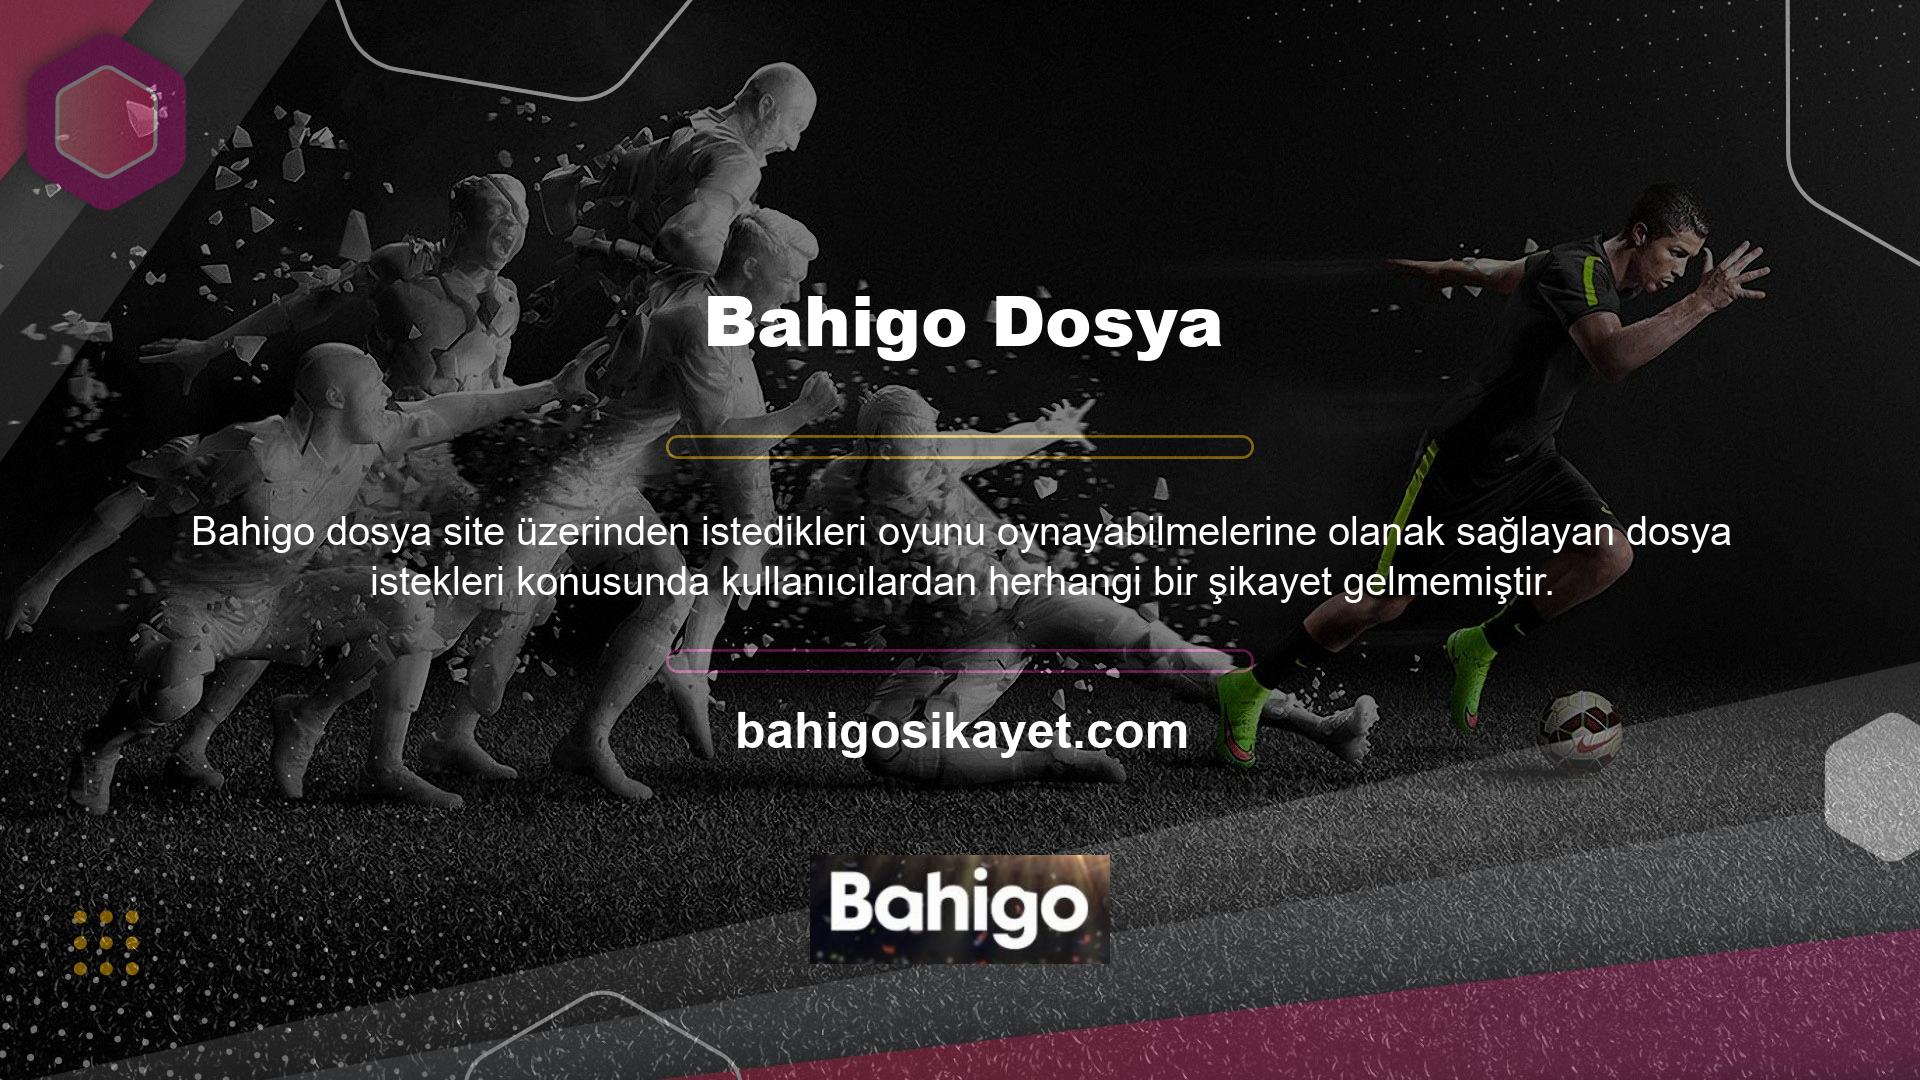 Bahigo yer aldığı tüm oyunlar kullanıcı dostu bir şekilde sunulmaktadır ve keyiflidir